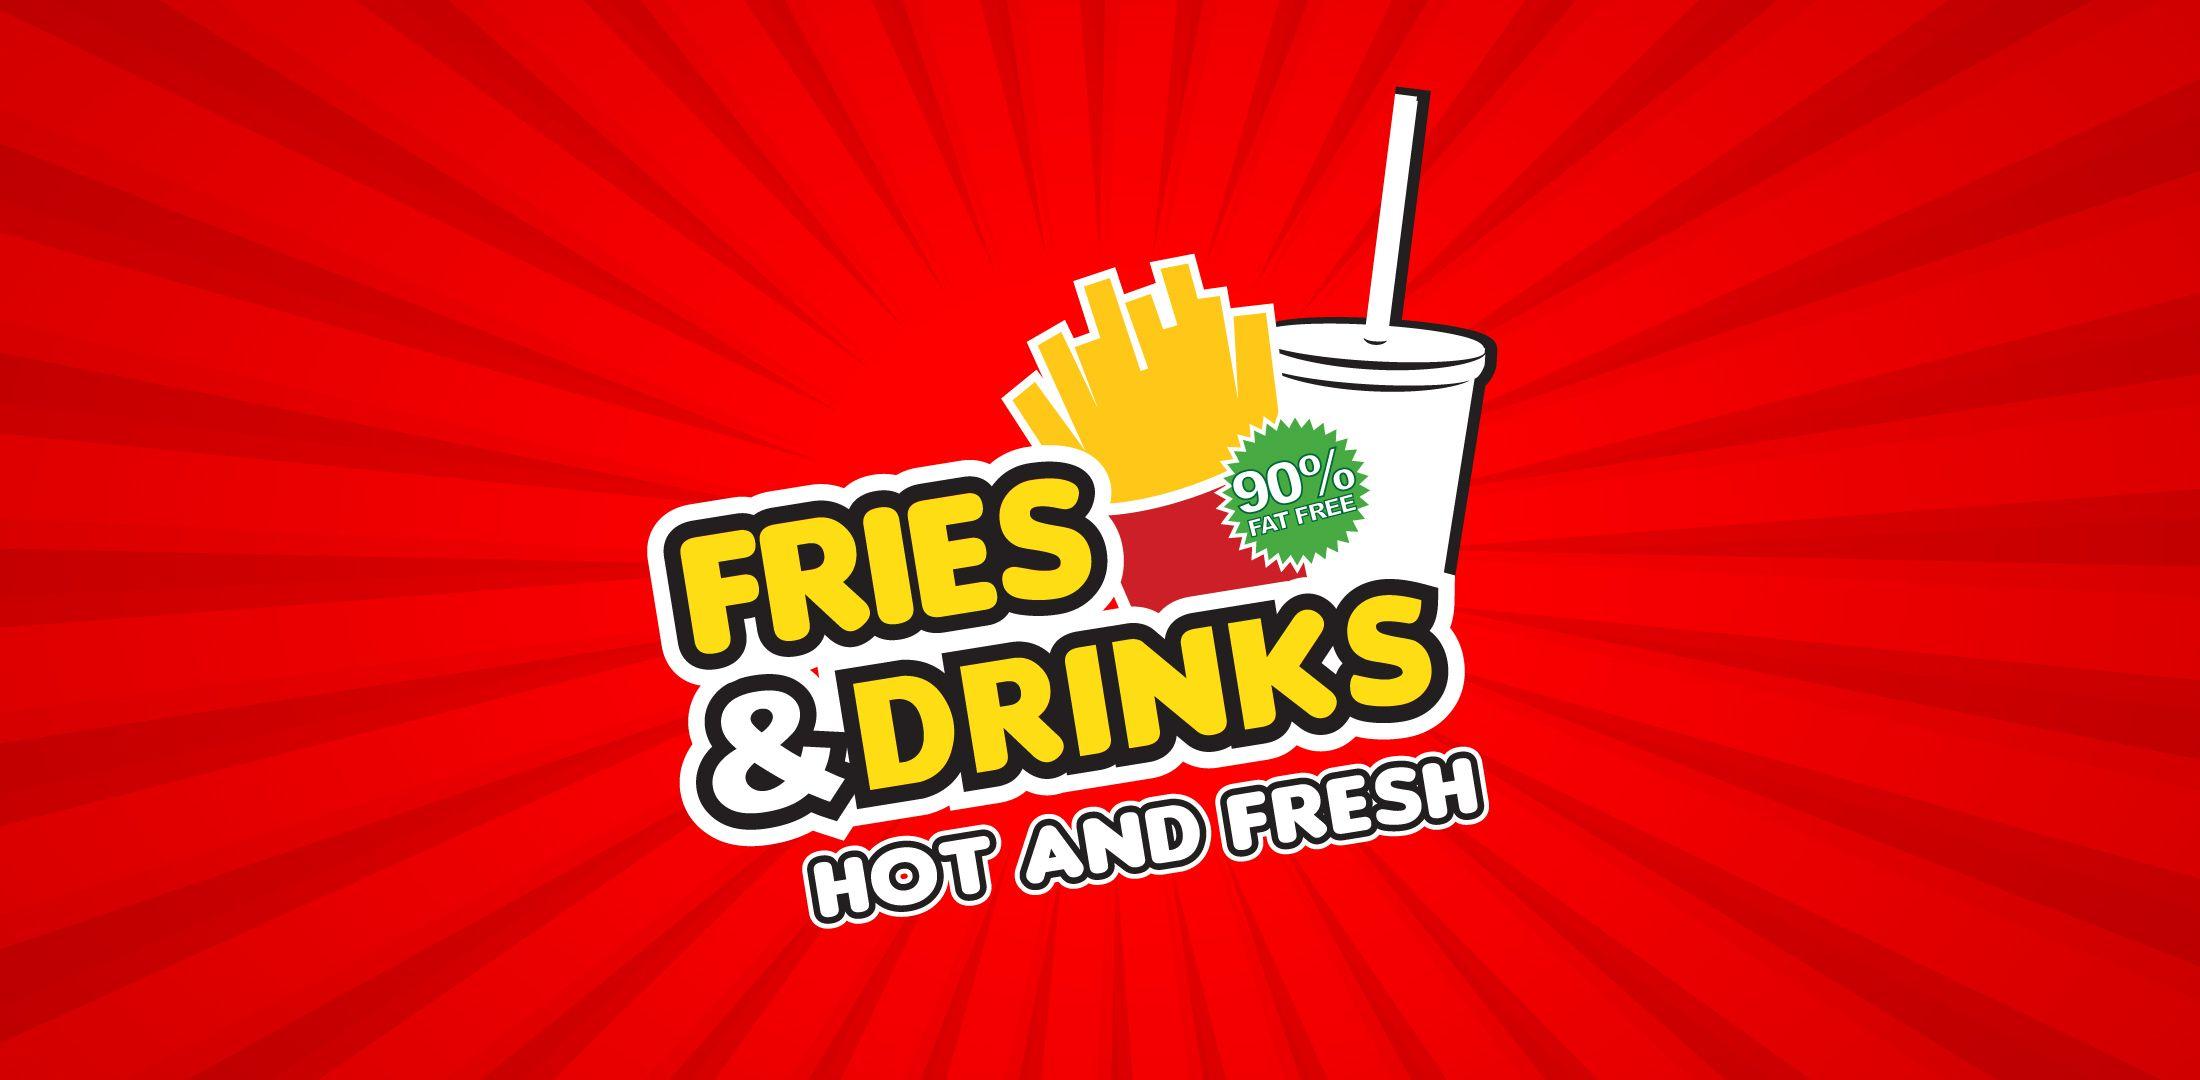 Fries Logo - ADCAKE™. Fries and Drinks Logo on Logos & Branding